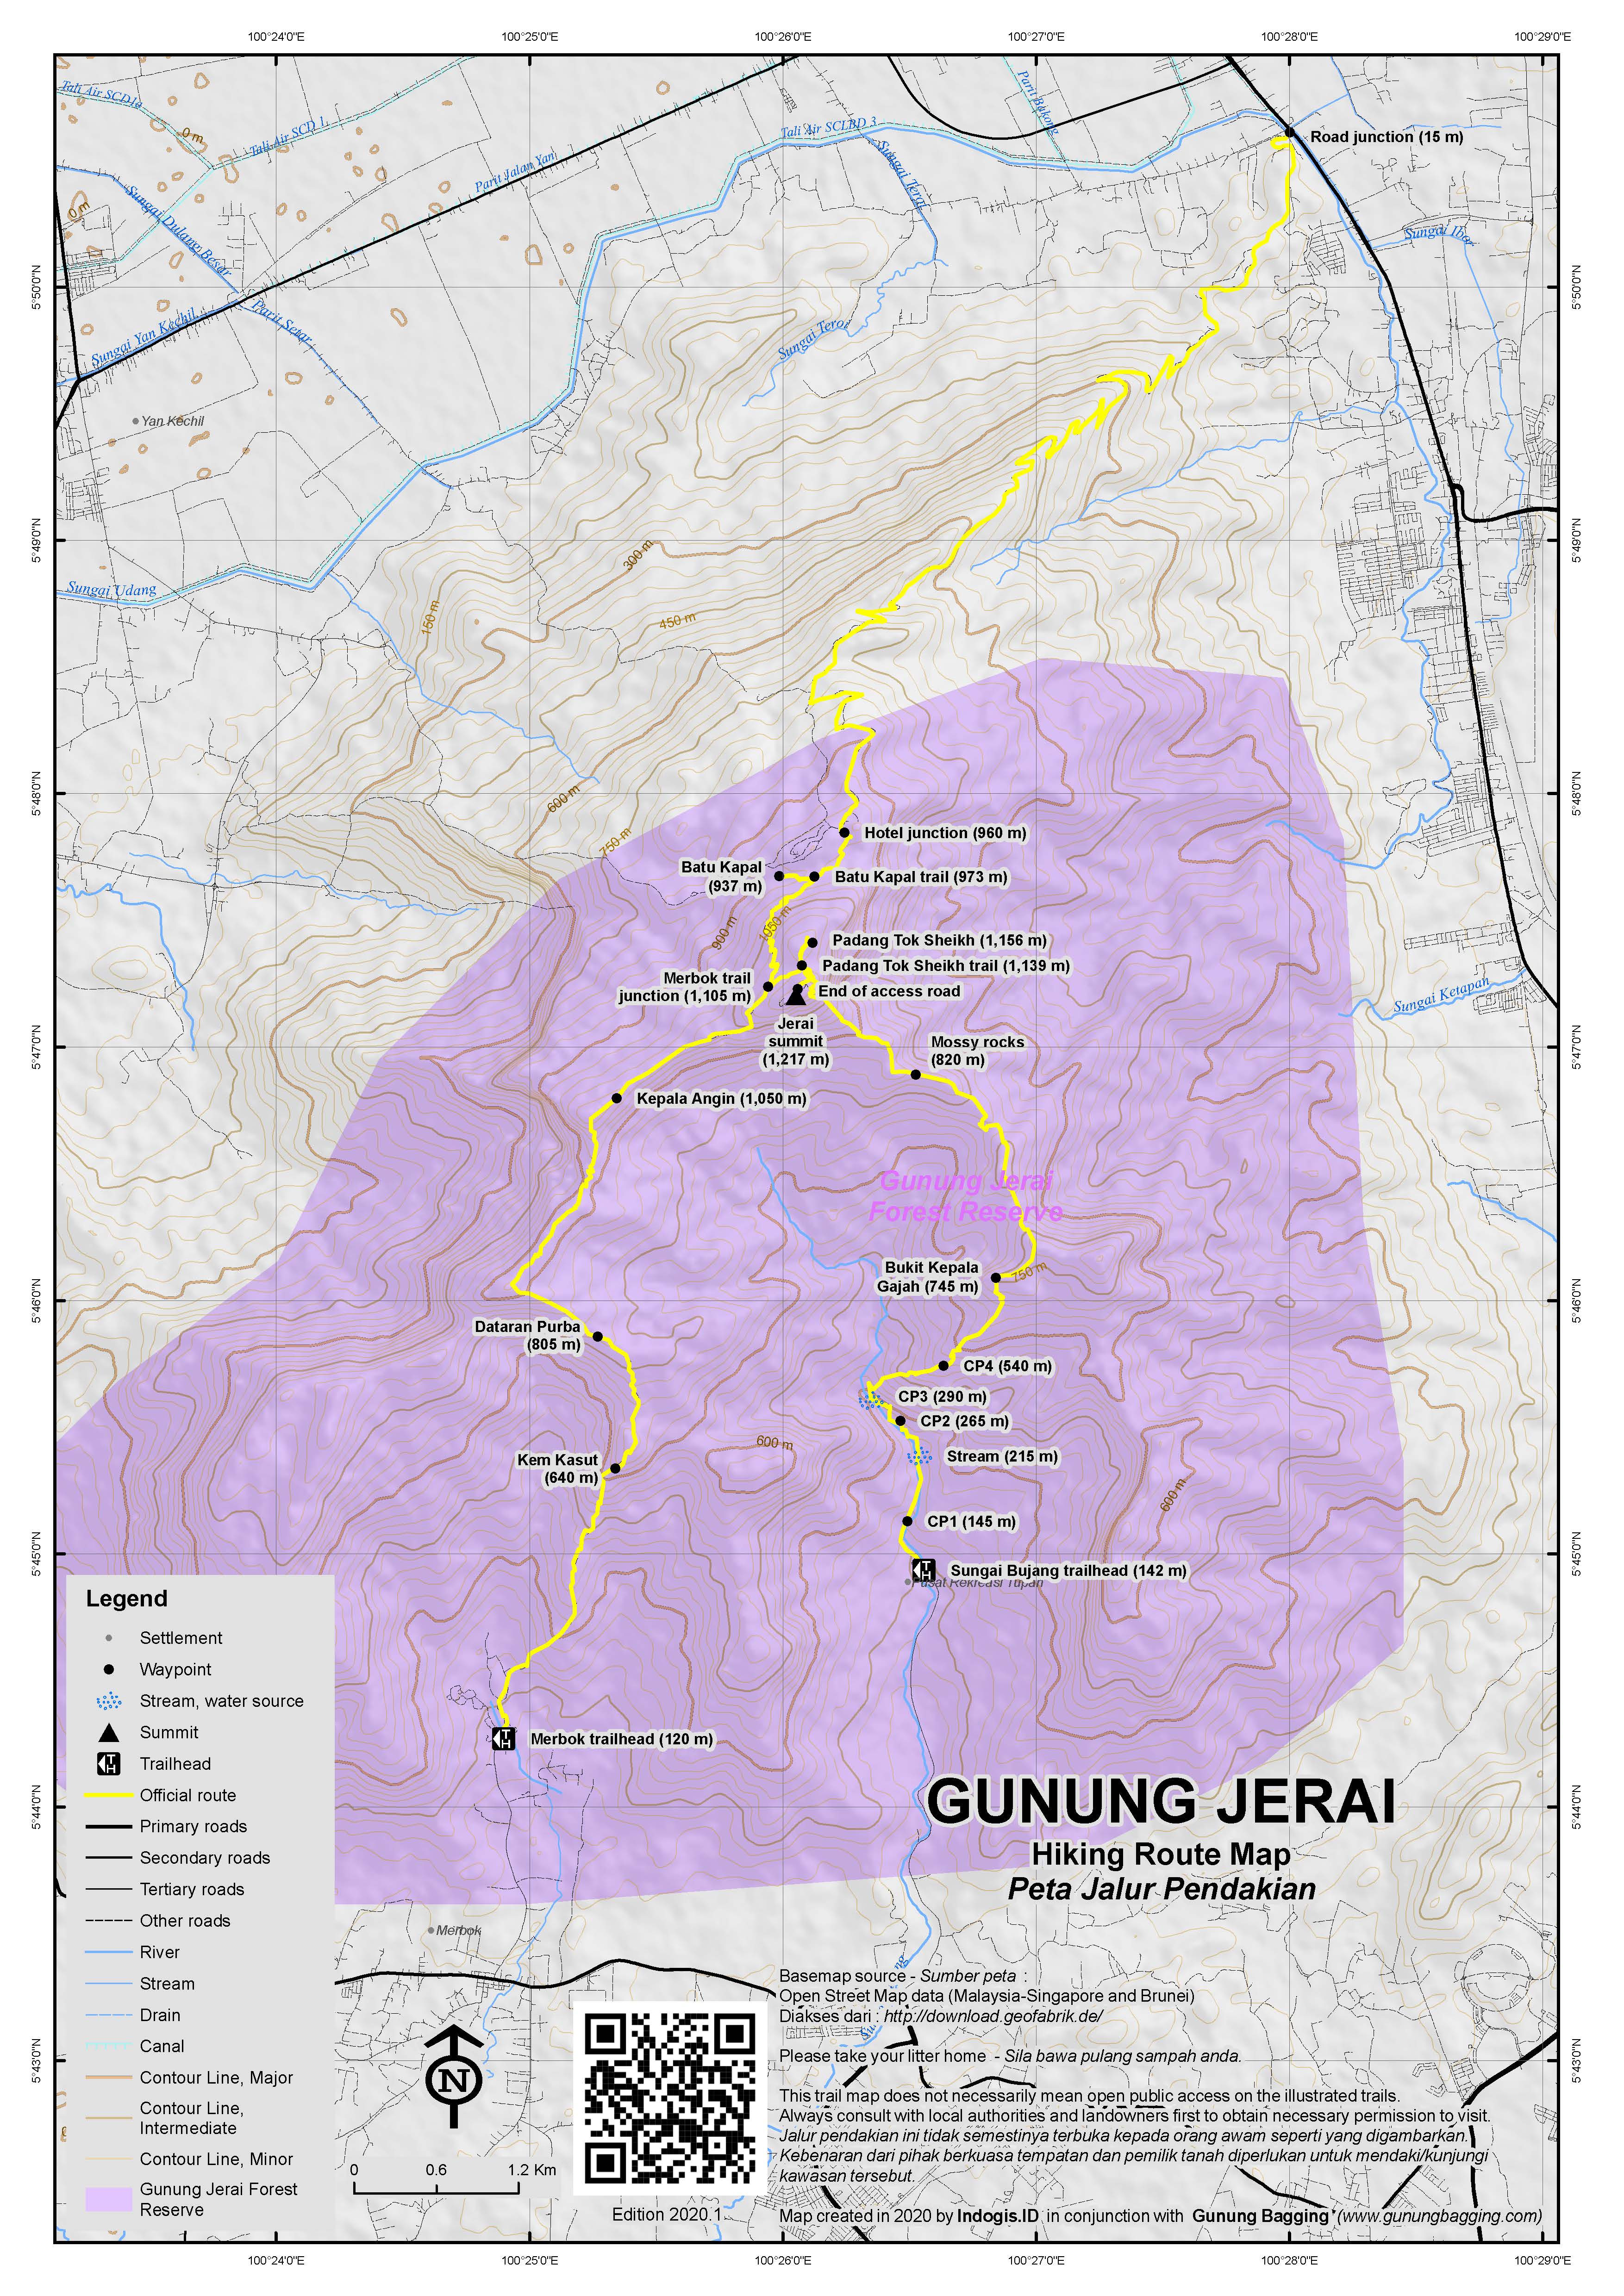 Peta Jalur Pendakian Gunung Jerai